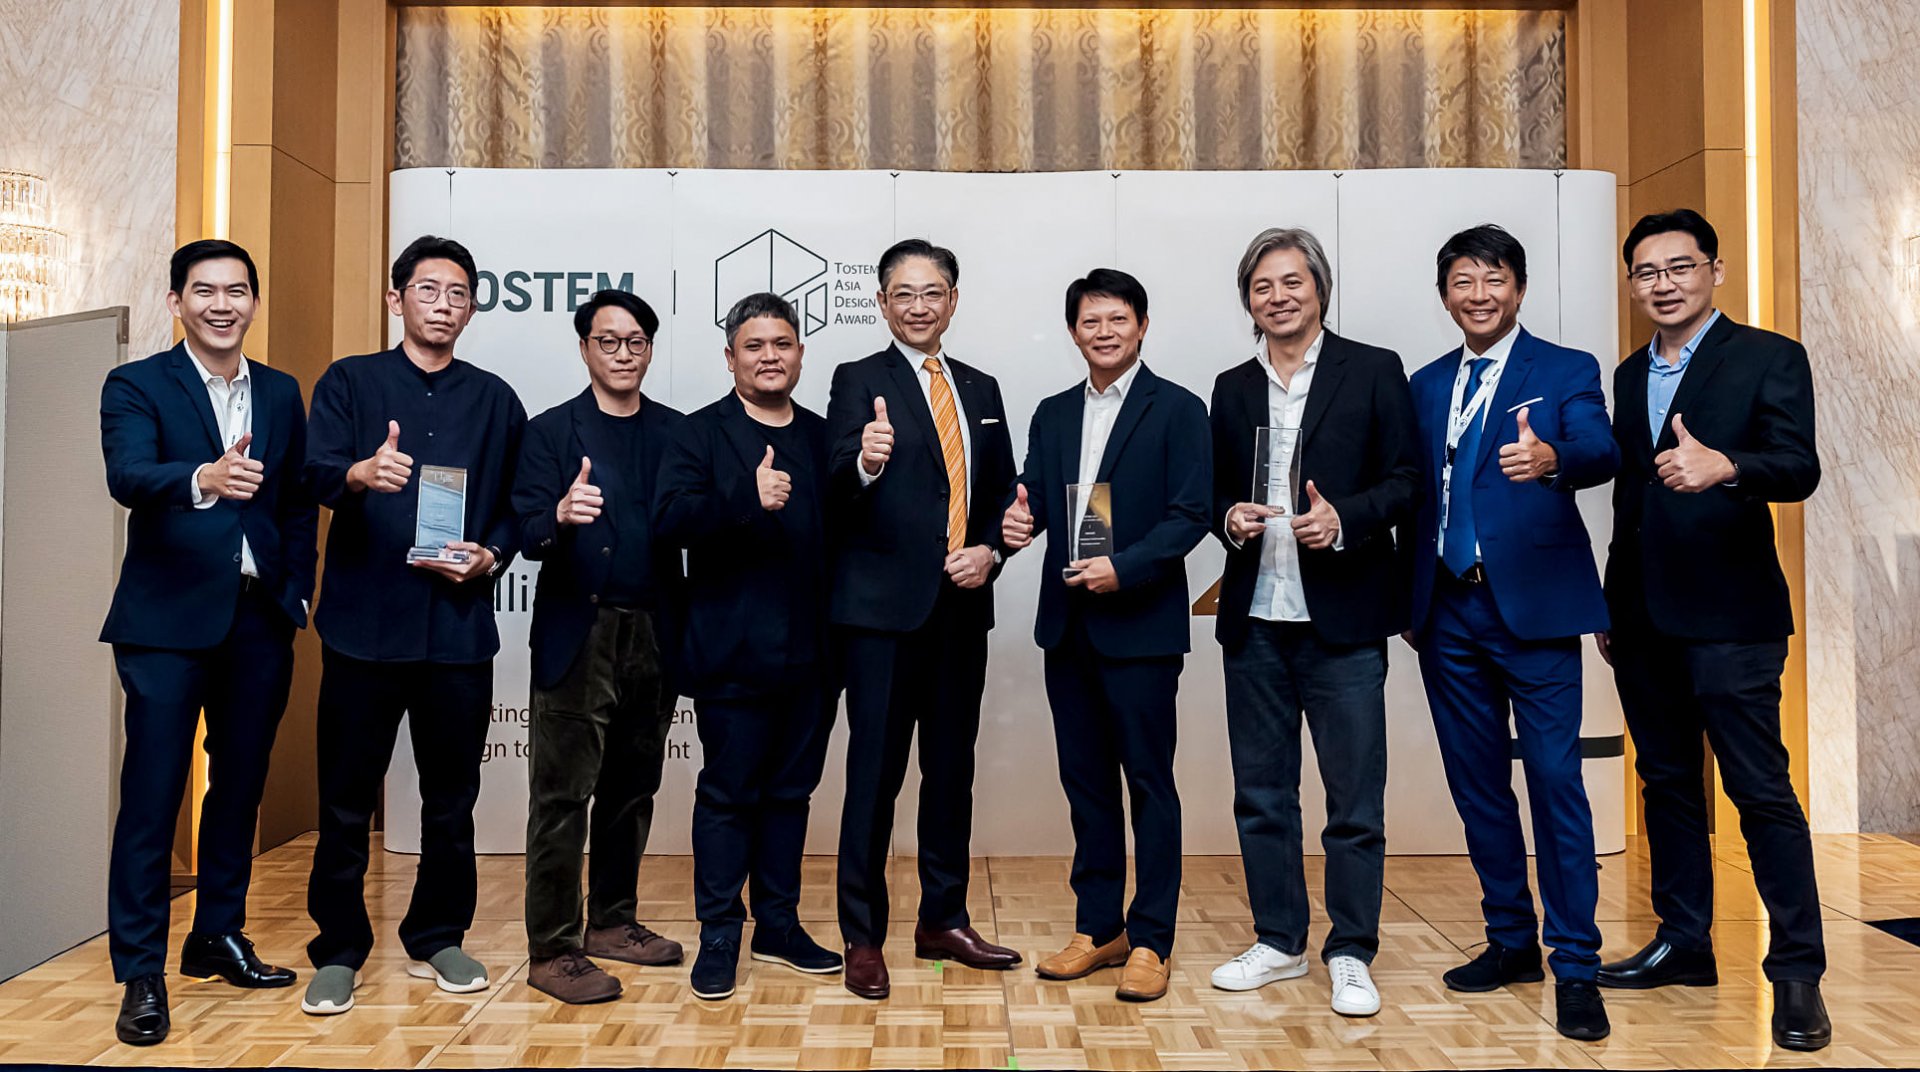 "ทอสเท็ม" ปลื้ม! สถาปนิกชาวไทยสร้างสรรค์ผลงานออกแบบยอดเยี่ยม คว้า 3 รางวัล การประกวด "TOSTEM Asia Design award 2023" ณ กรุงโตเกียว ประเทศญี่ปุ่น